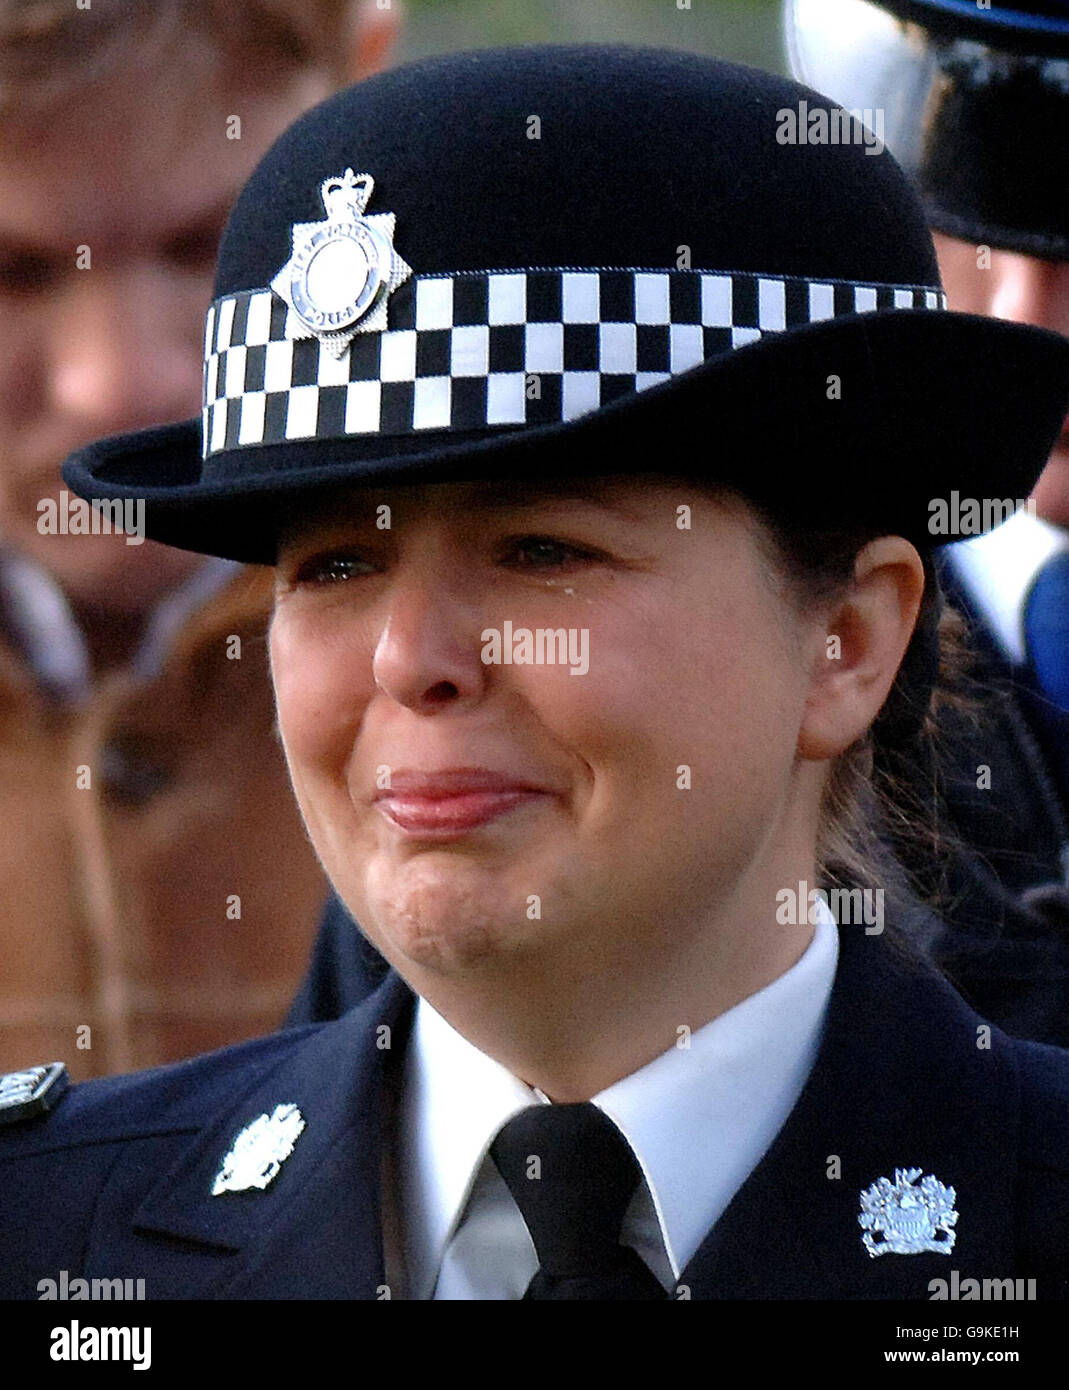 WPC Teresa Milburn during a memorial service for fellow officer Sharon Beshenivsky in Bradford. Stock Photo